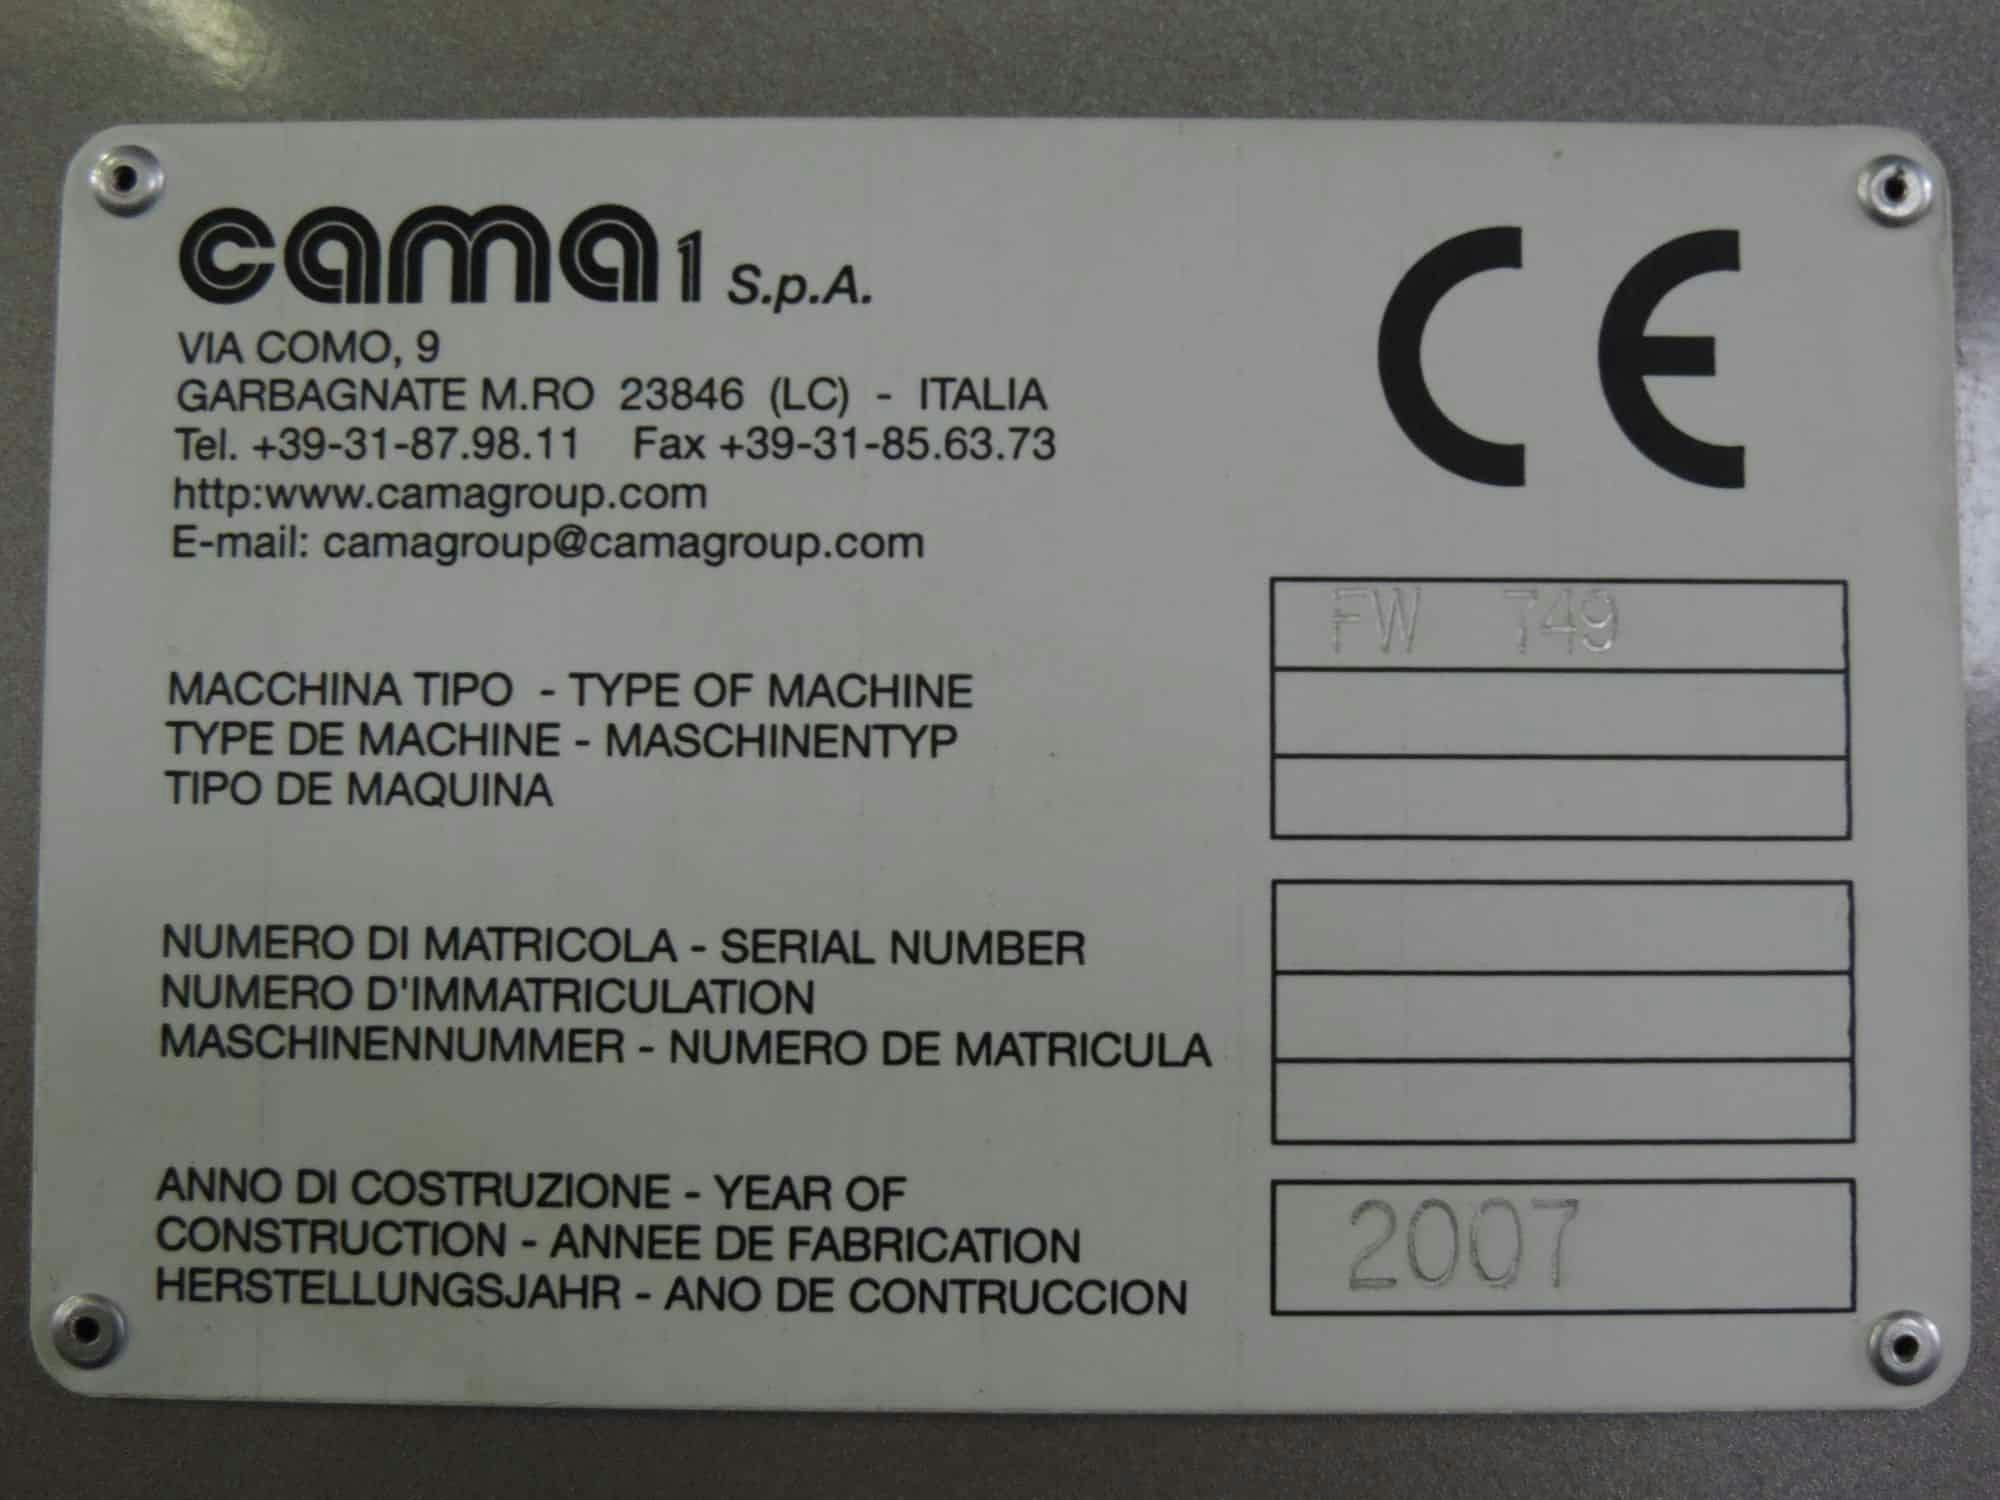 Placa de identificación of Cama Group FW 749